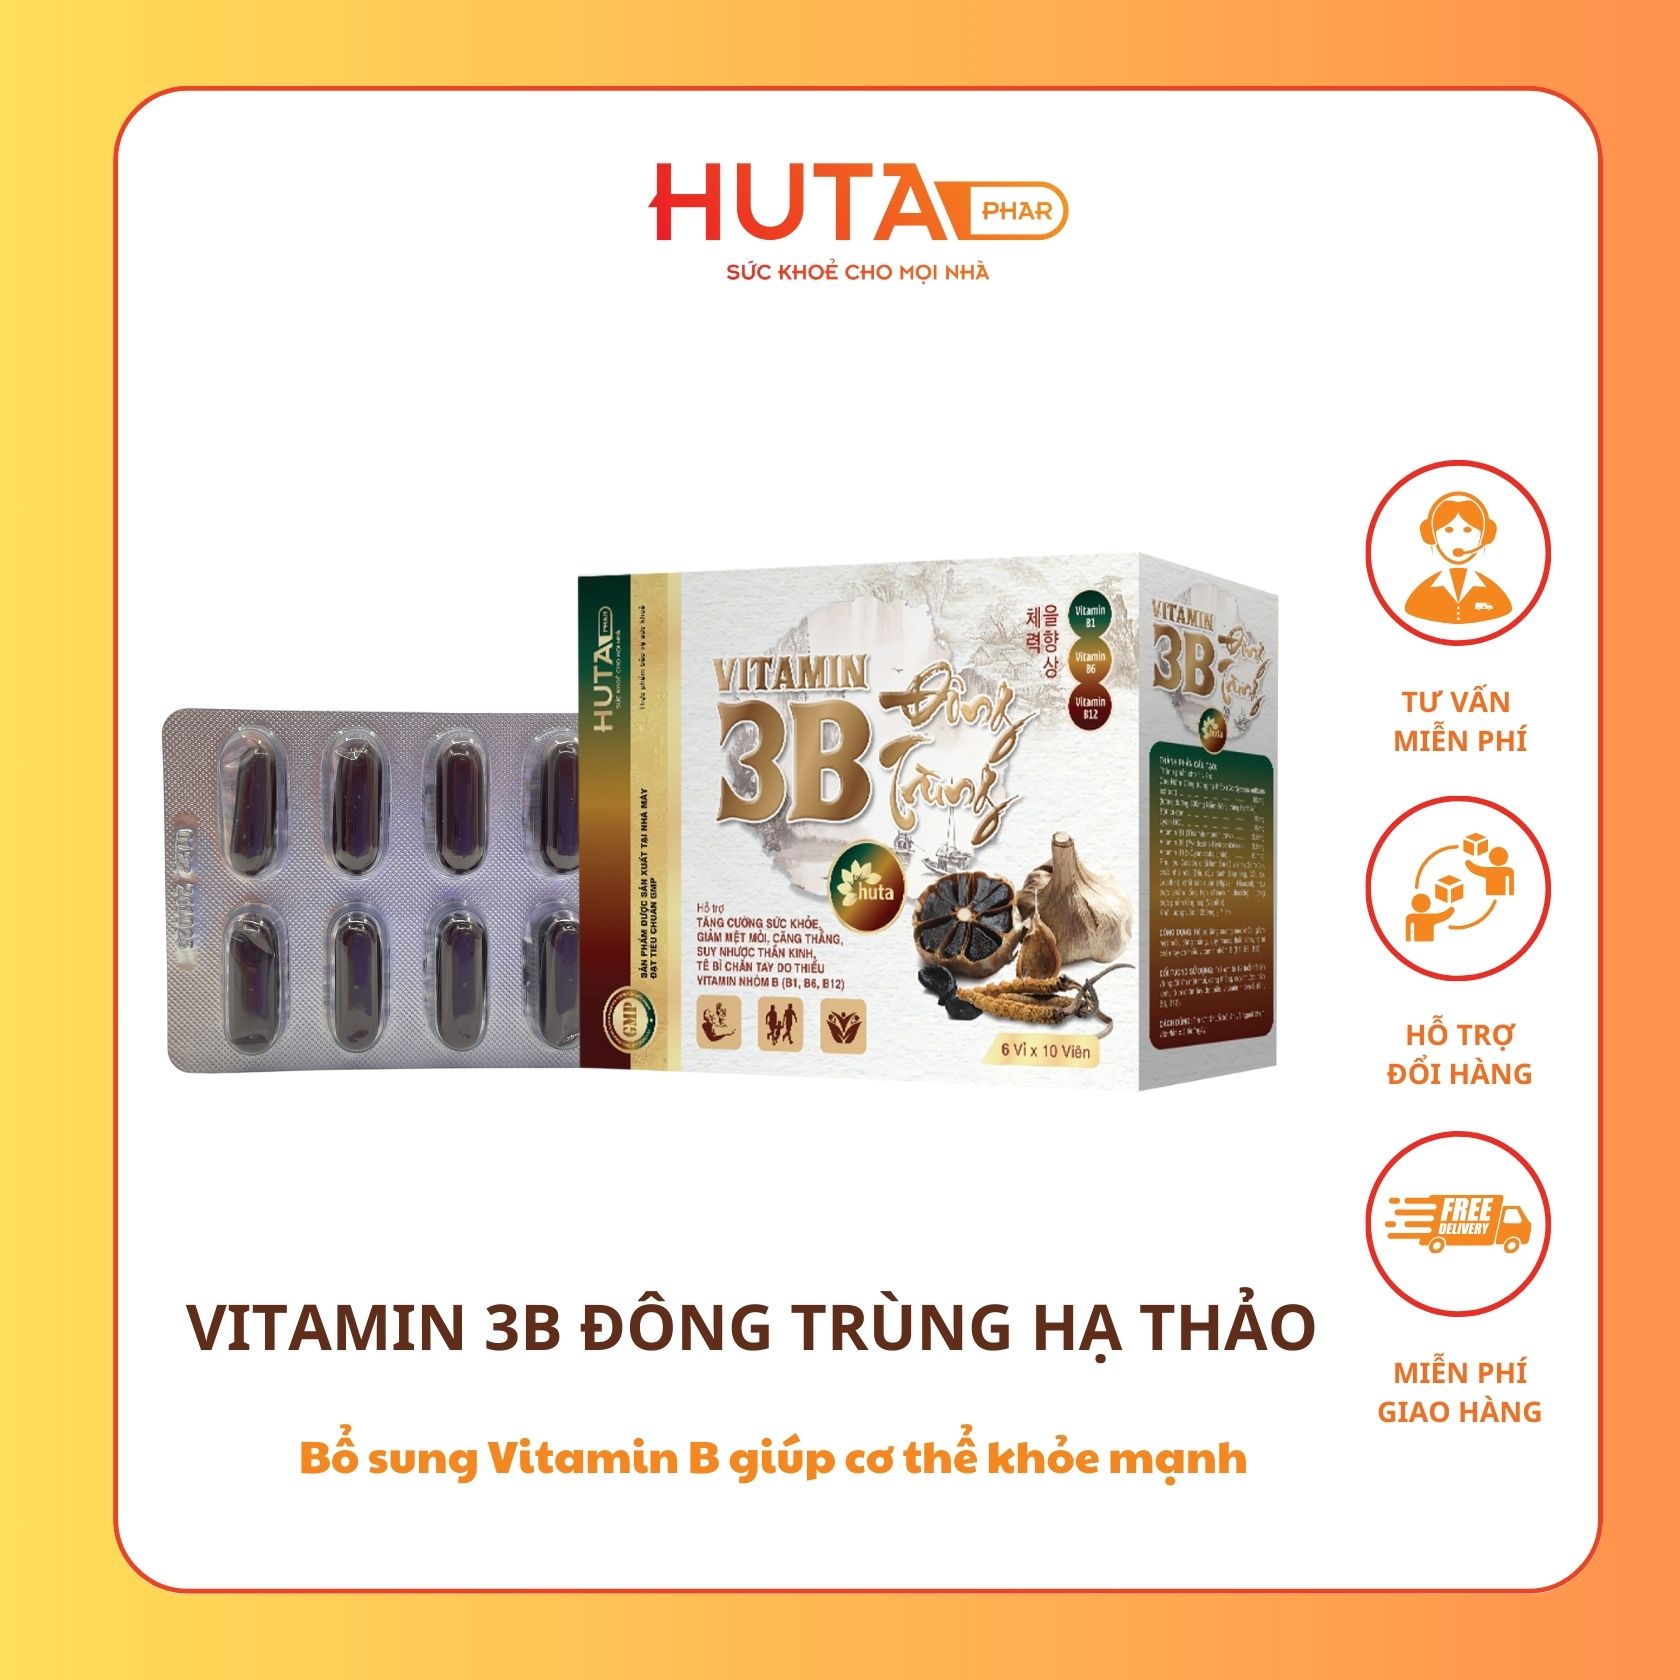 Vitamin 3B Đông trùng hạ thảo bổ sung vitamin B giúp cơ thể khỏe mạnh